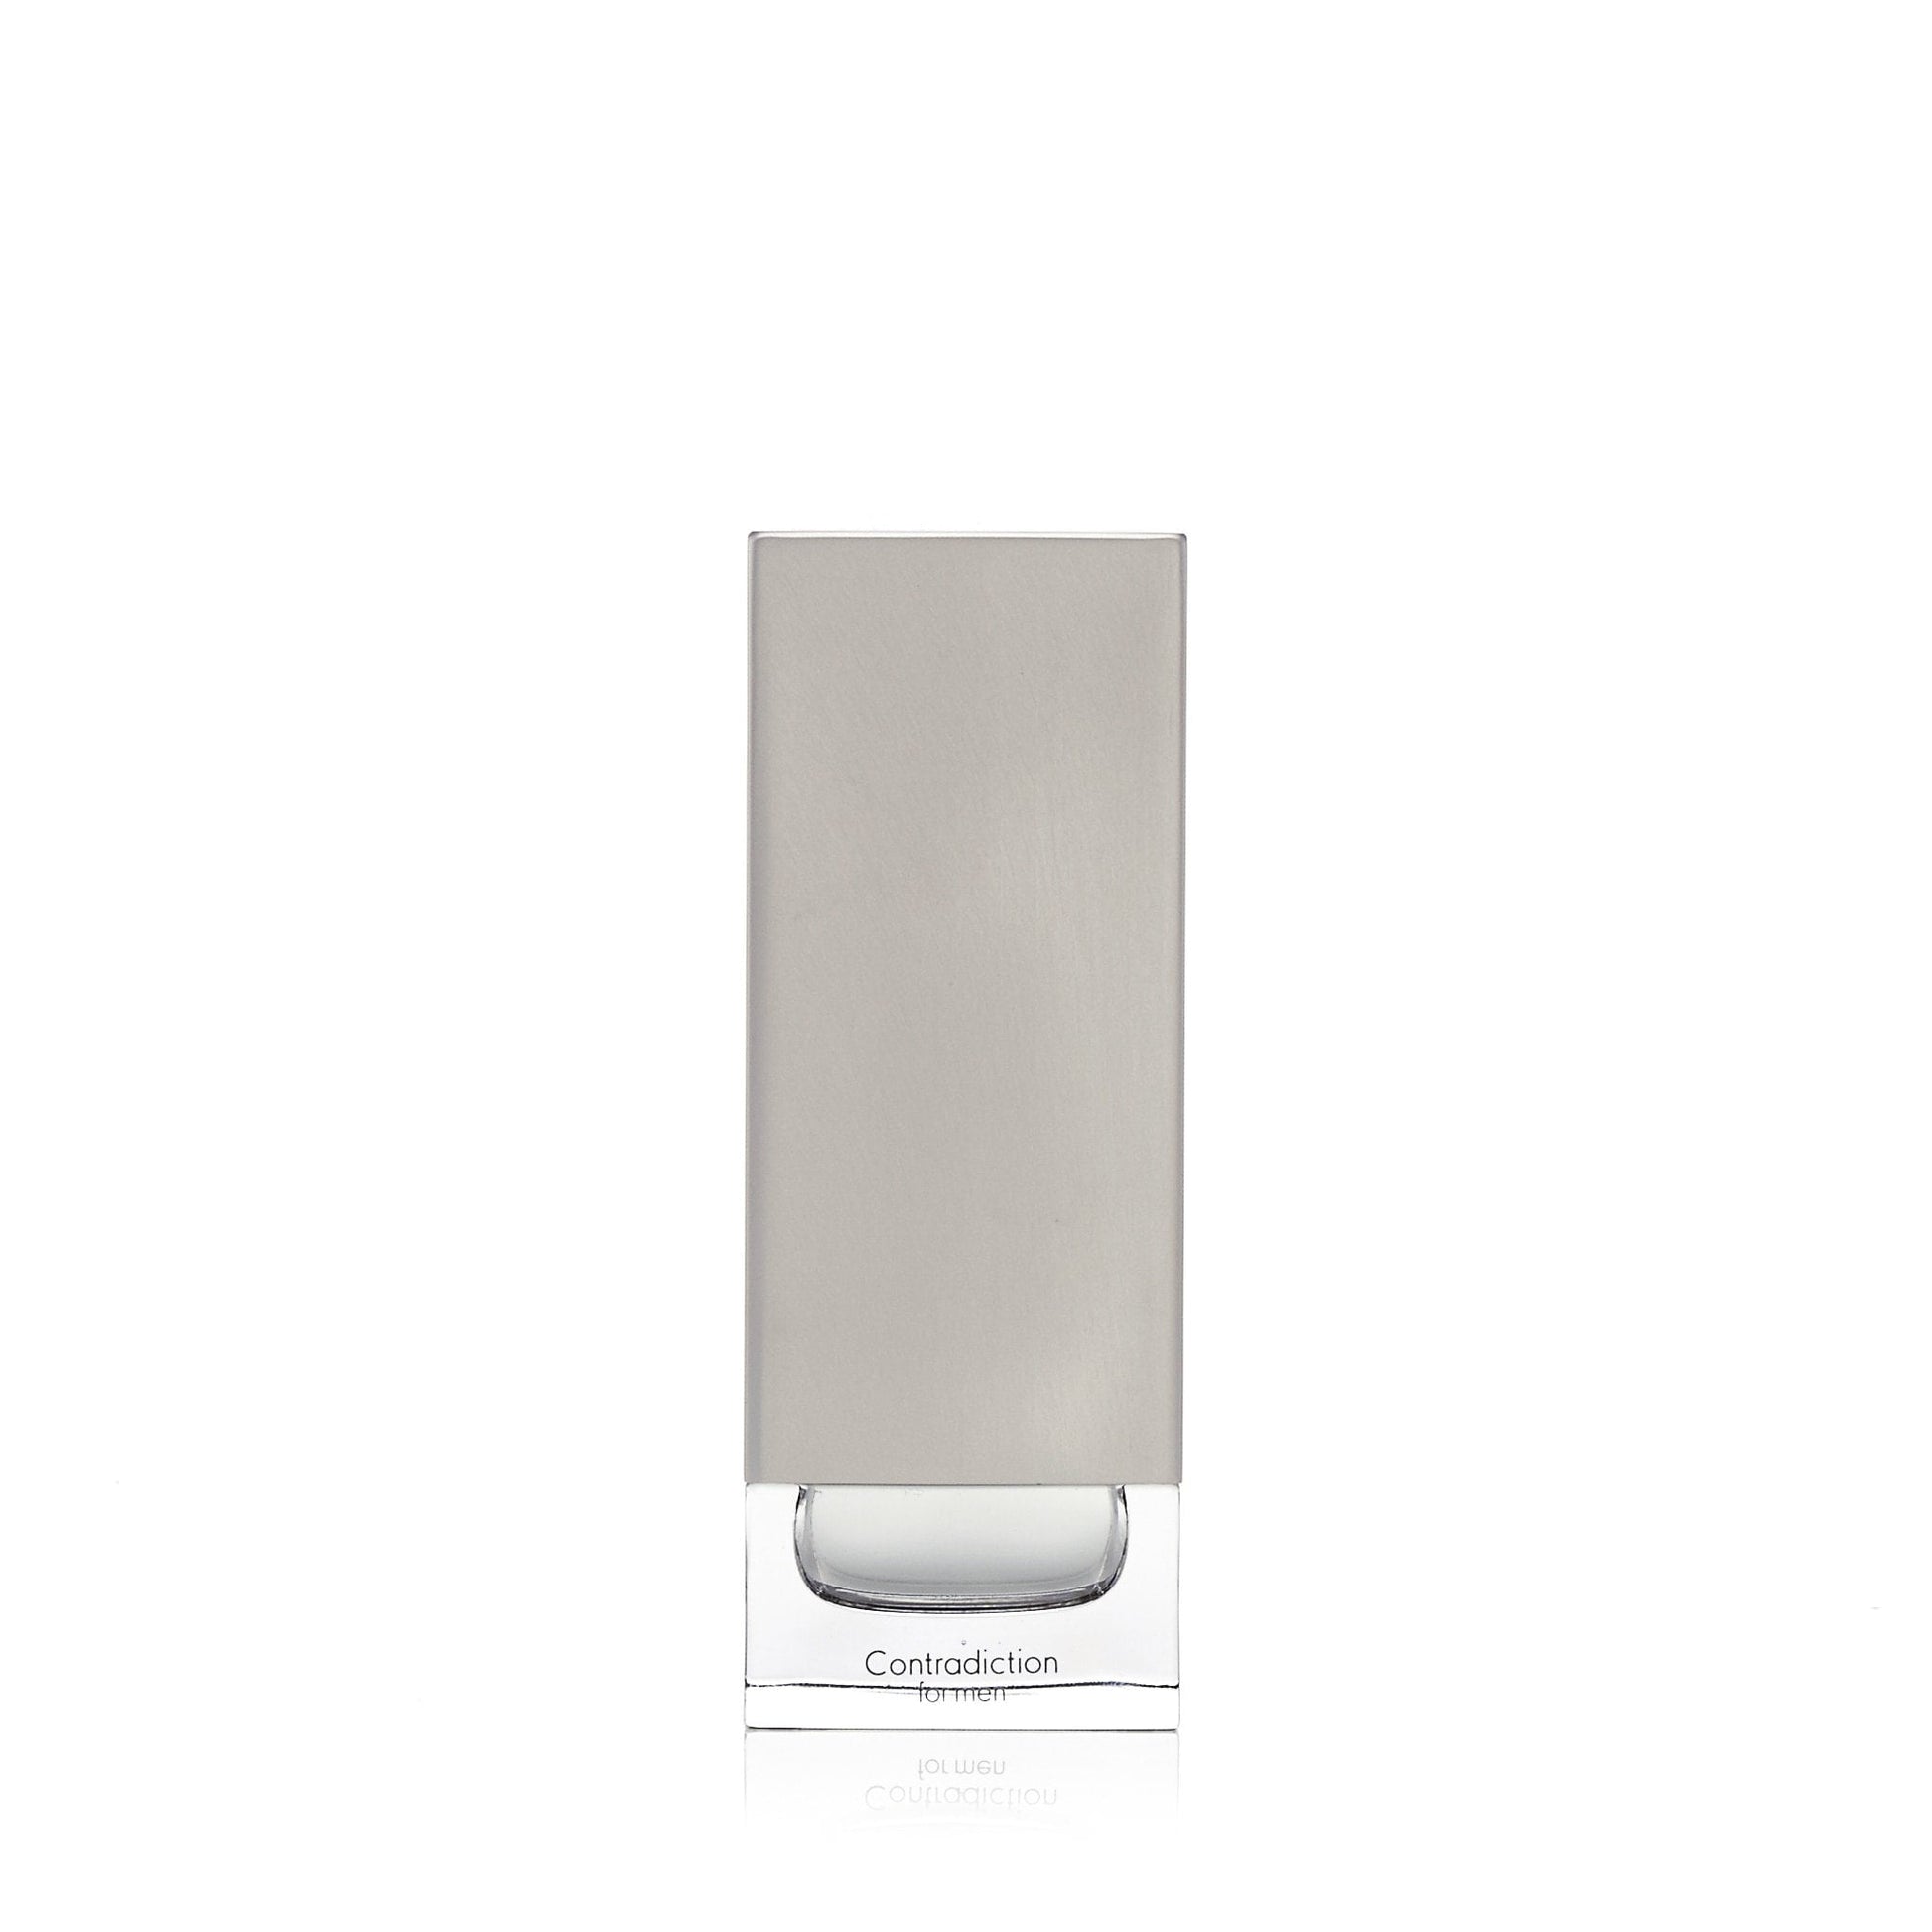 Contradiction Eau de Toilette Spray for Men by Calvin Klein, Product image 1